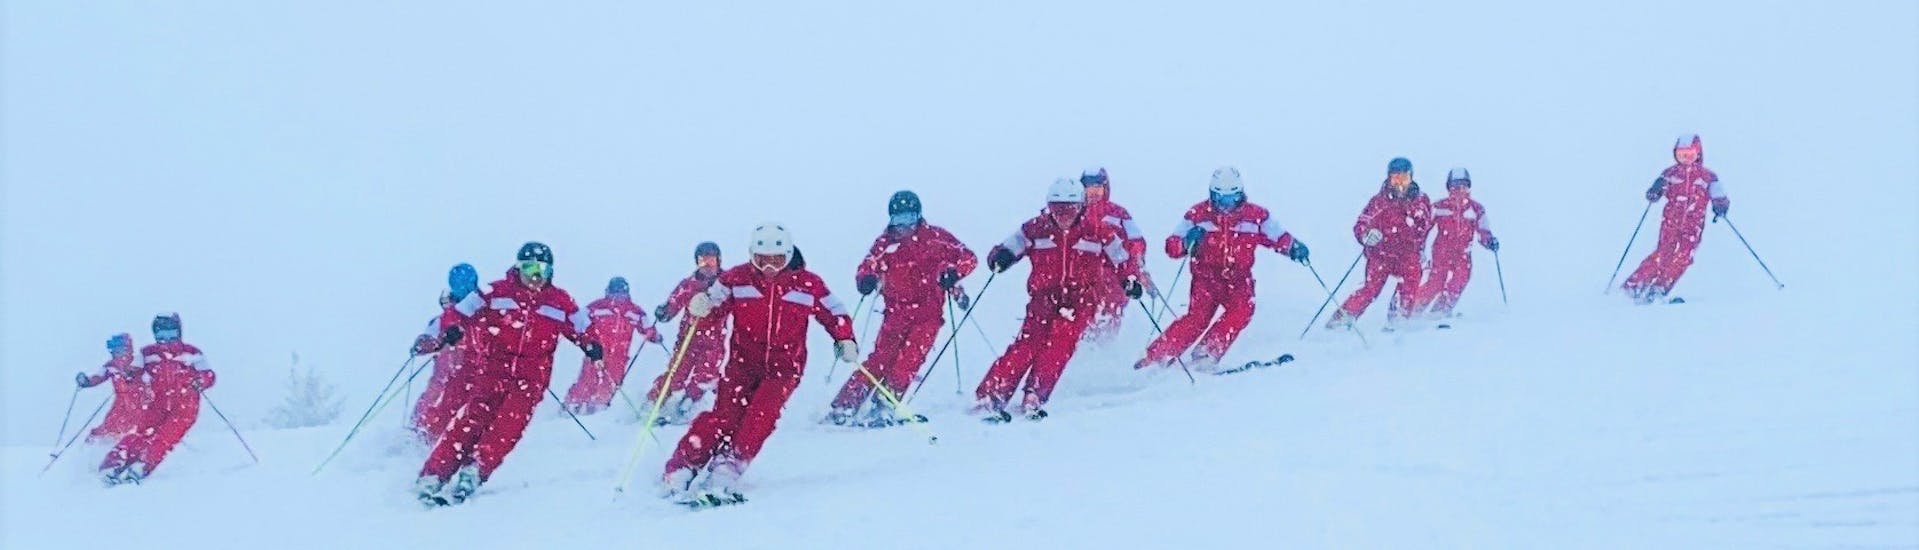 Eine Gruppe Skilehrer der Schneesportschule Oberndorf fährt während einem Skikurs für Jugendliche die Pisten hinunter. 